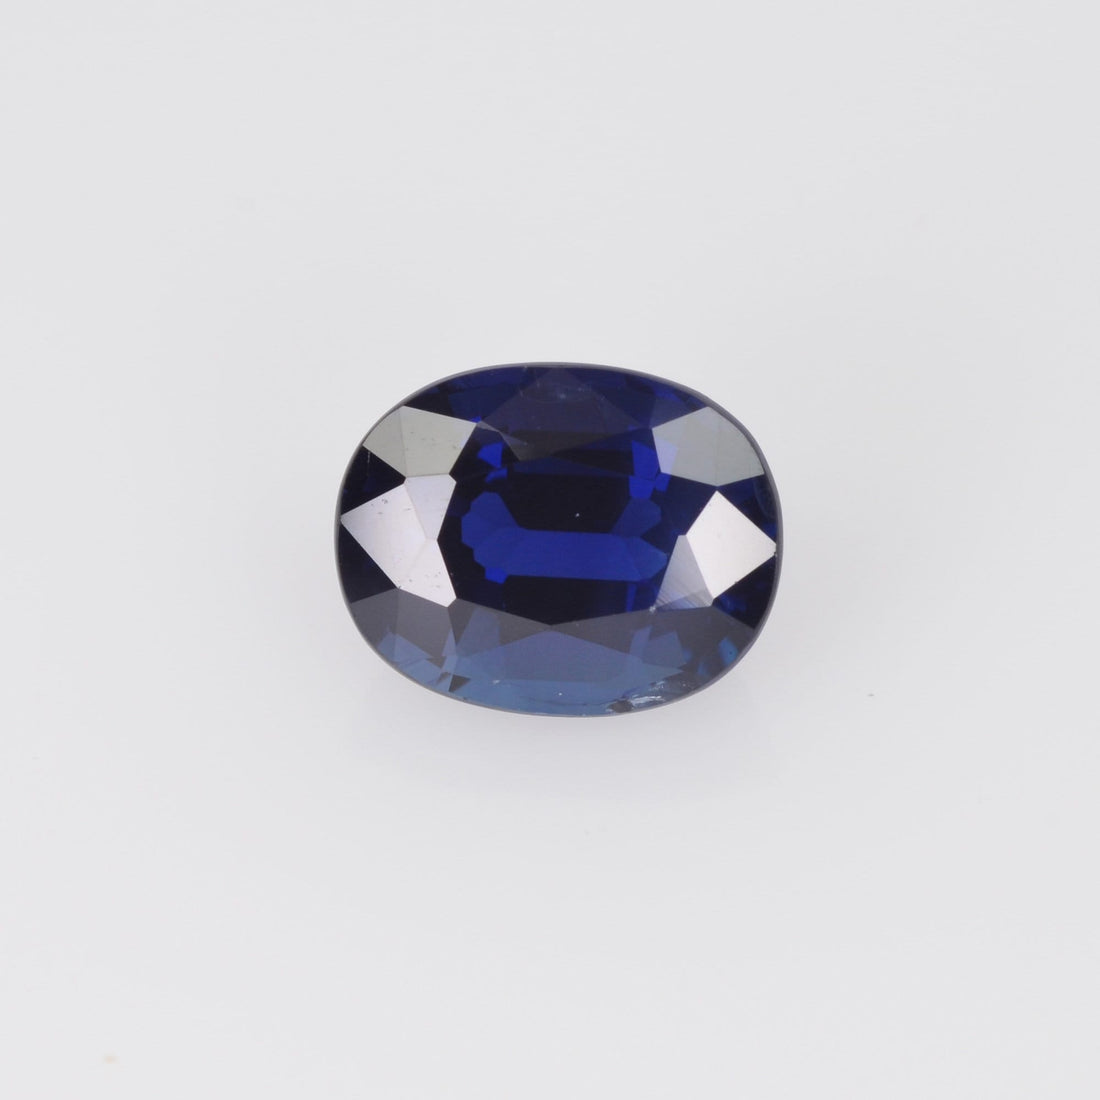 1.46 cts Natural Blue Sapphire Loose Gemstone Cushion Cut